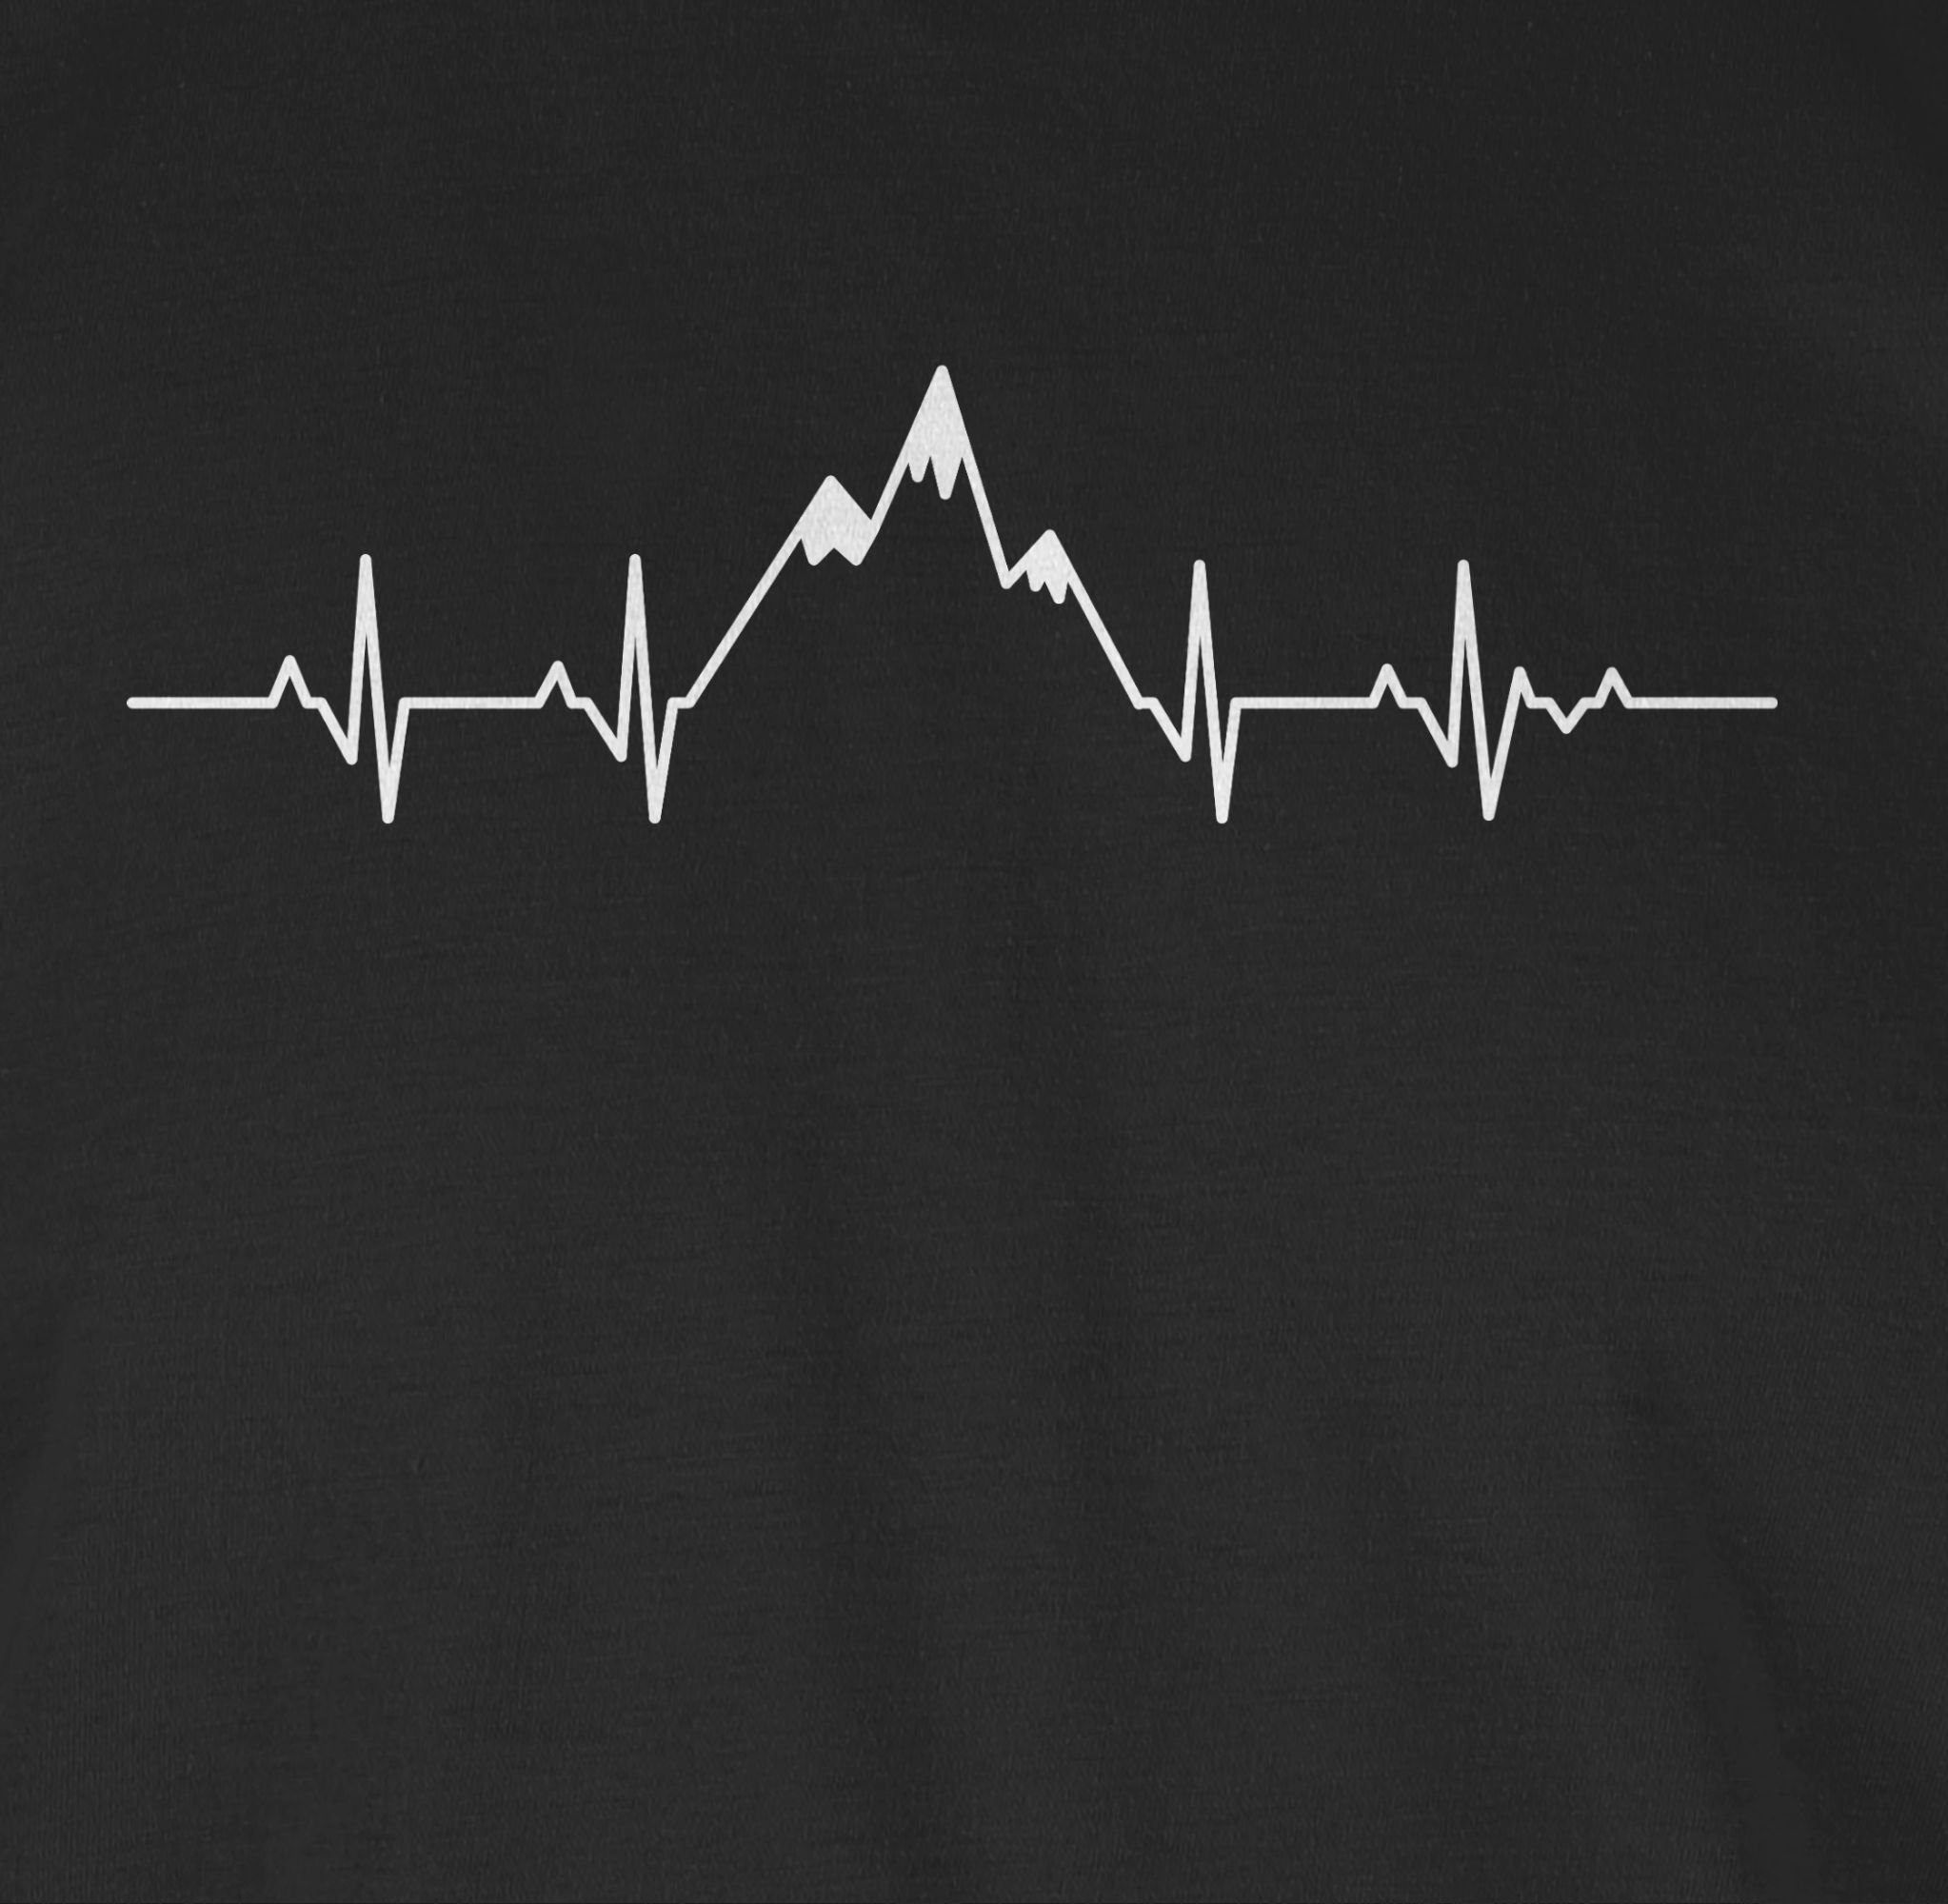 01 Schwarz Shirtracer Symbol und Zeichen Herzschlag T-Shirt Berge Outfit